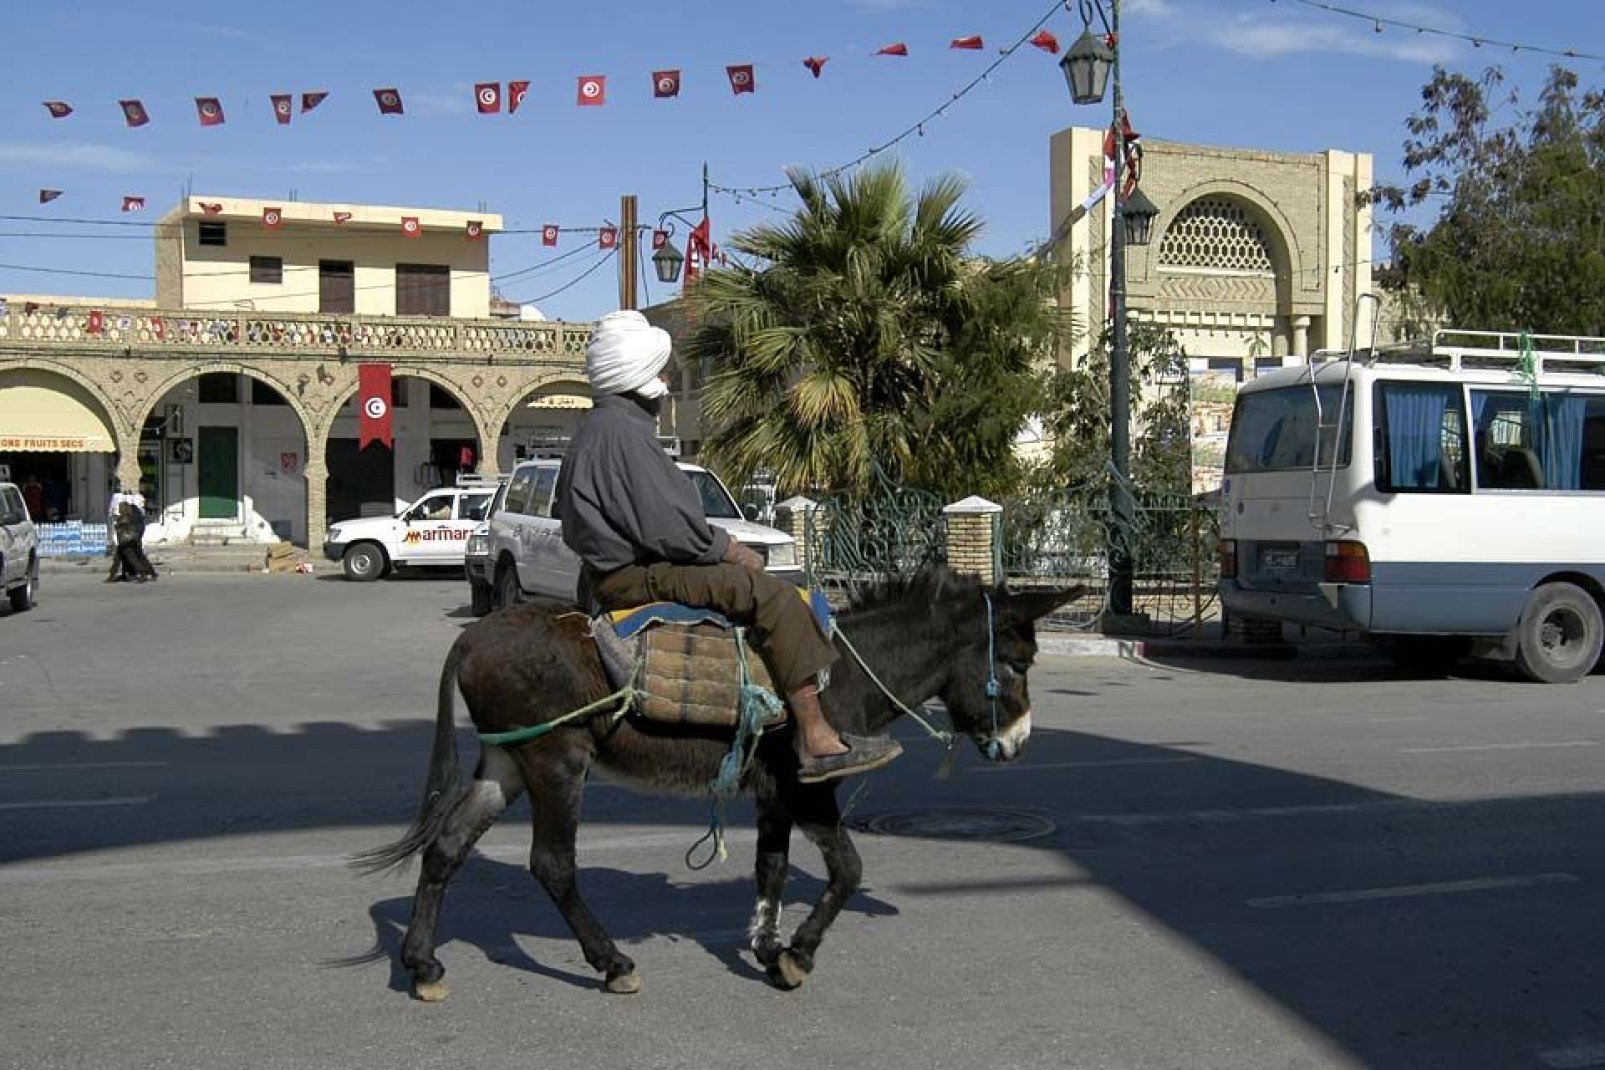 Capoluogo del sud ovest della Tunisia, la piccola città di Tozeur ospita più di 70.000 abitanti.